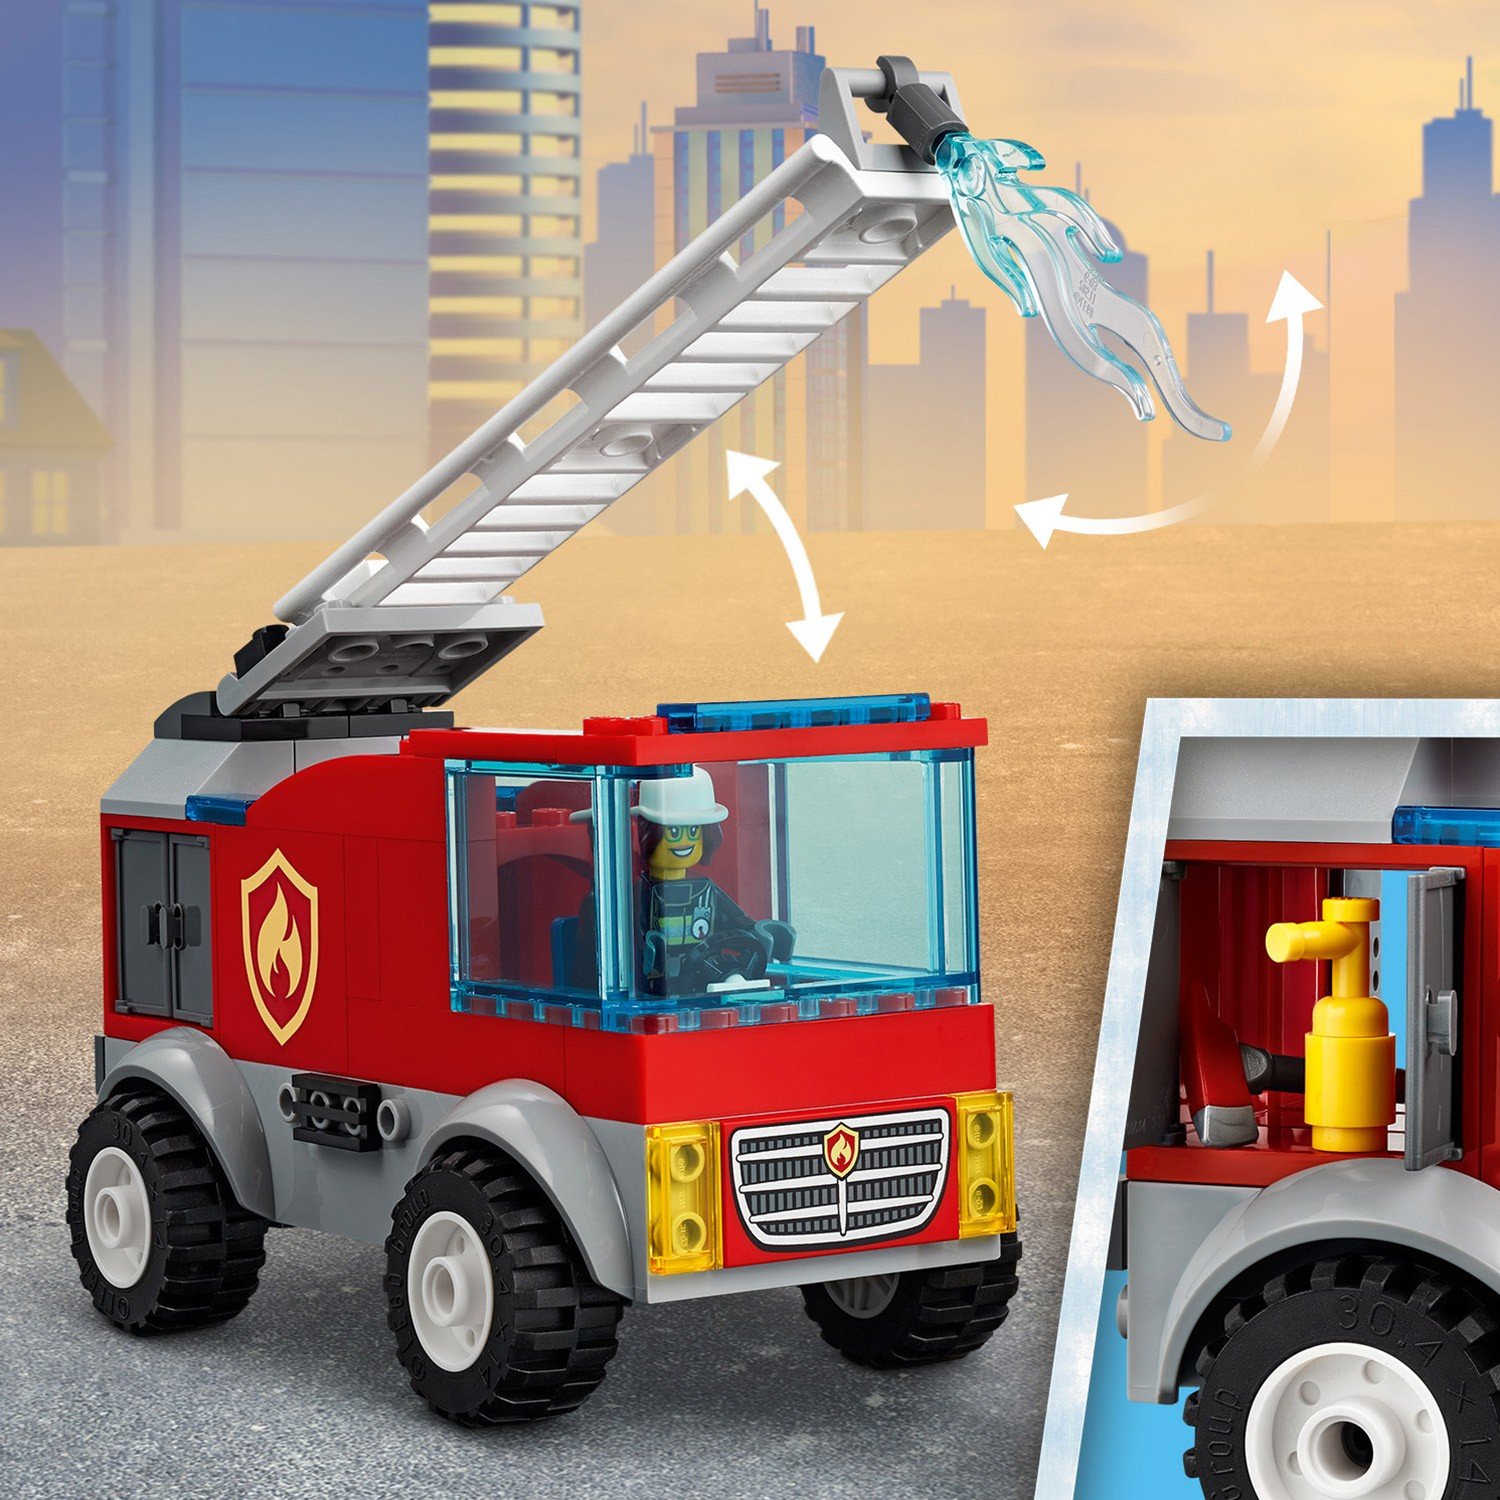 Lego City 60280 Пожарная машина с лестницей